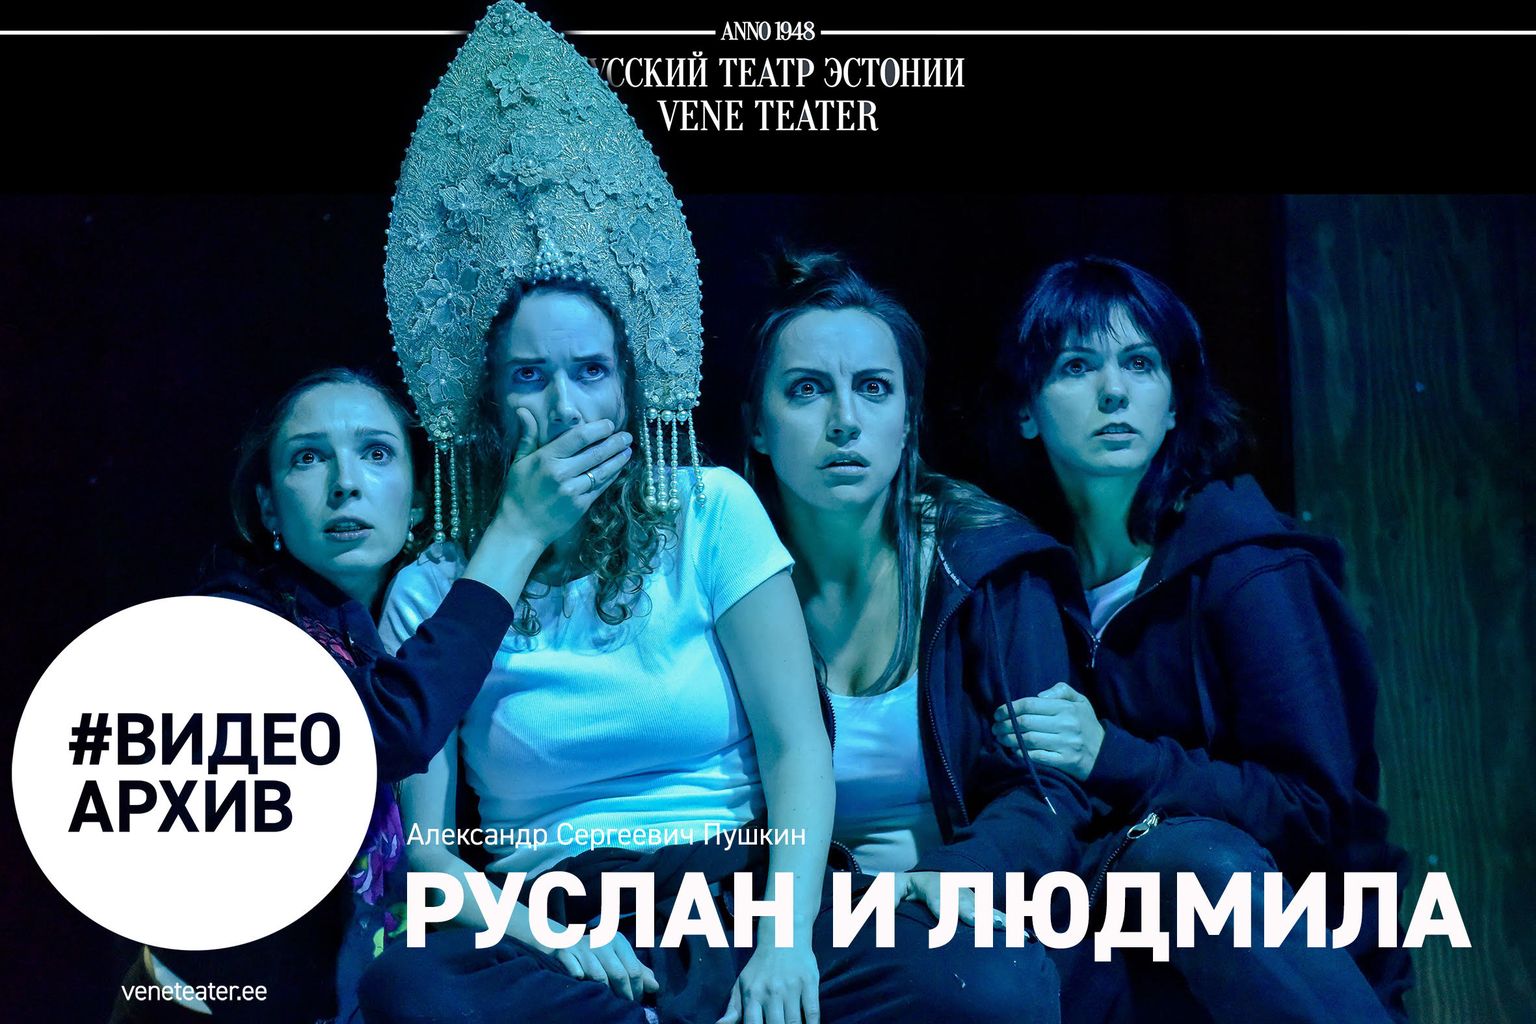 На YouTube-канале Русского театра будет показан спектакль «Руслан и Людмила».